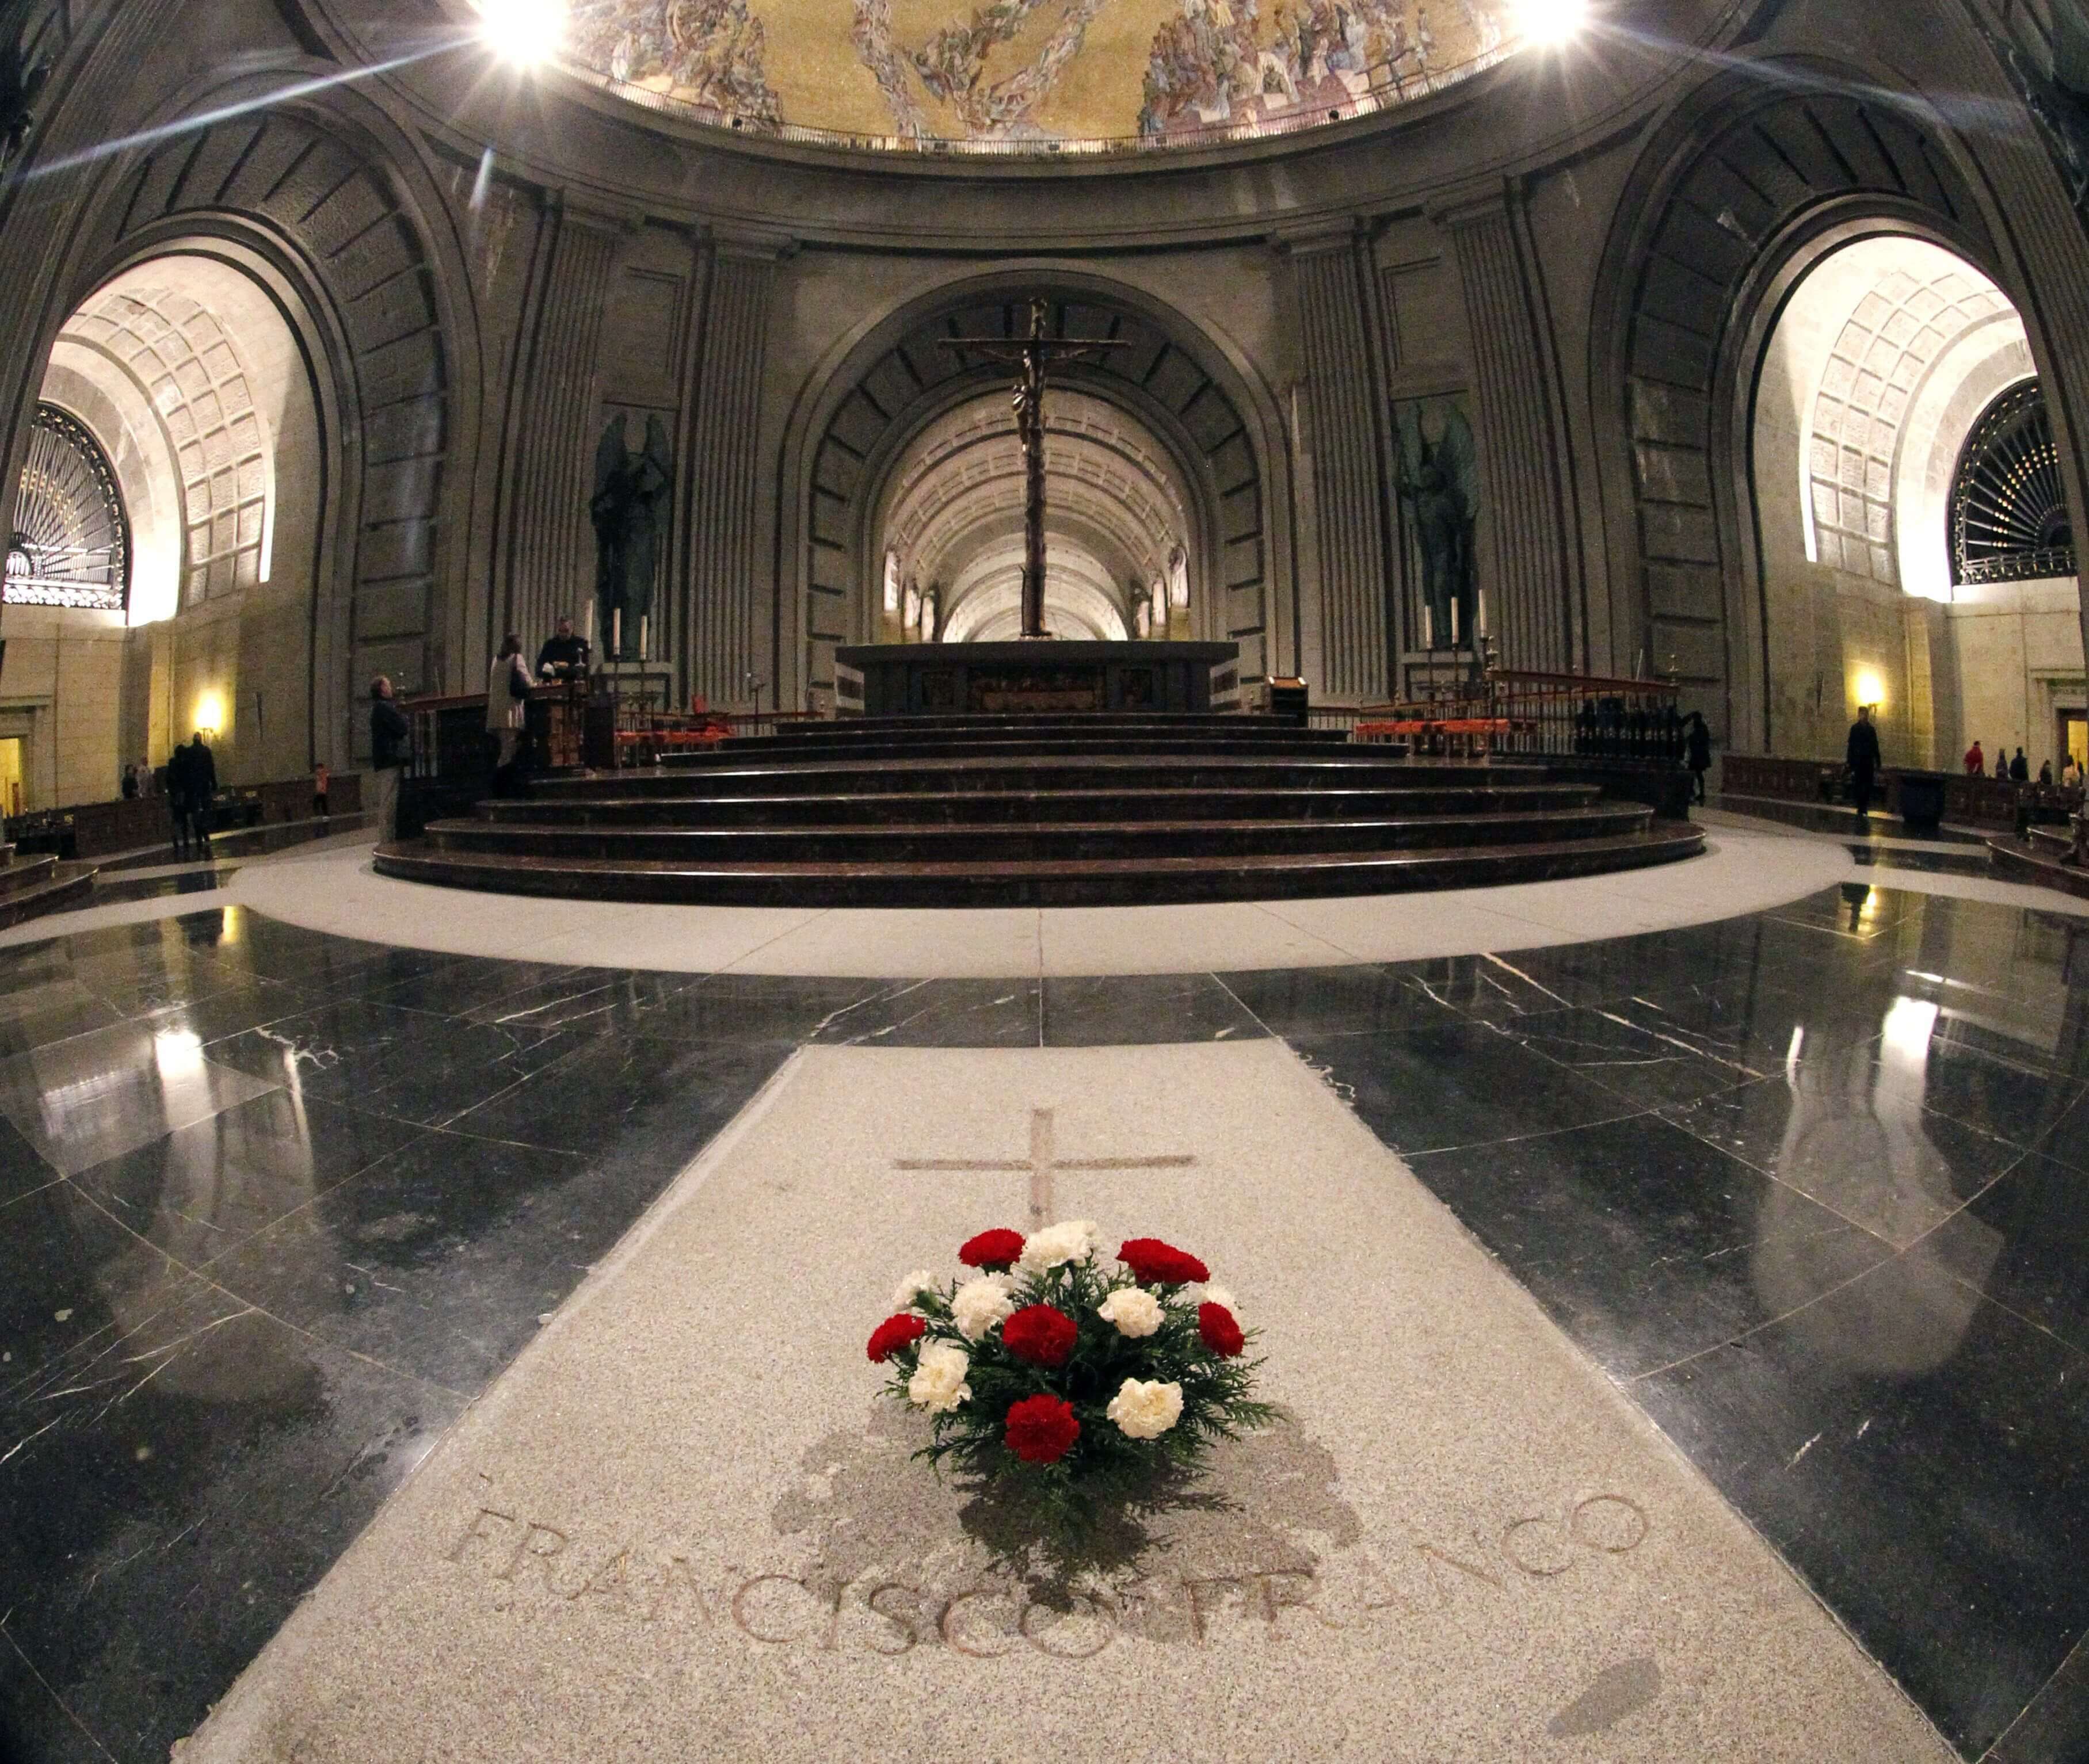 Foto: Interior de la Basílica del Valle de los Caídos donde está enterrado el dictador español Francisco Franco. El 3 de diciembre de 2011